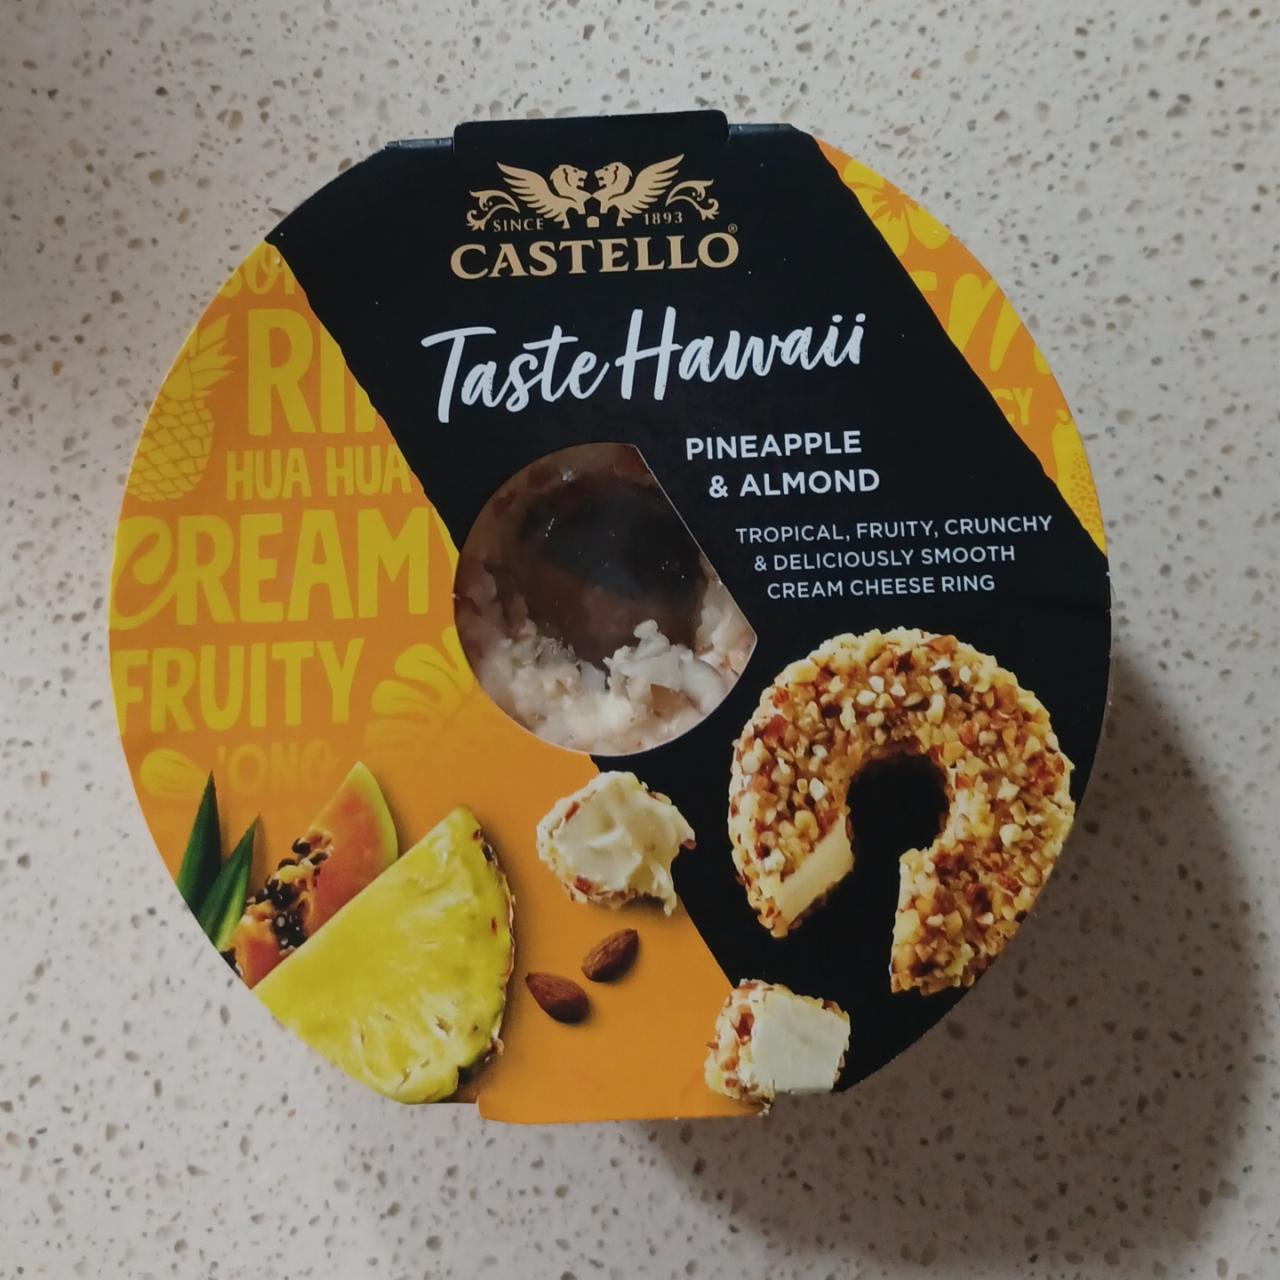 Fotografie - Taste Hawaii Pineapple & Almond Castello